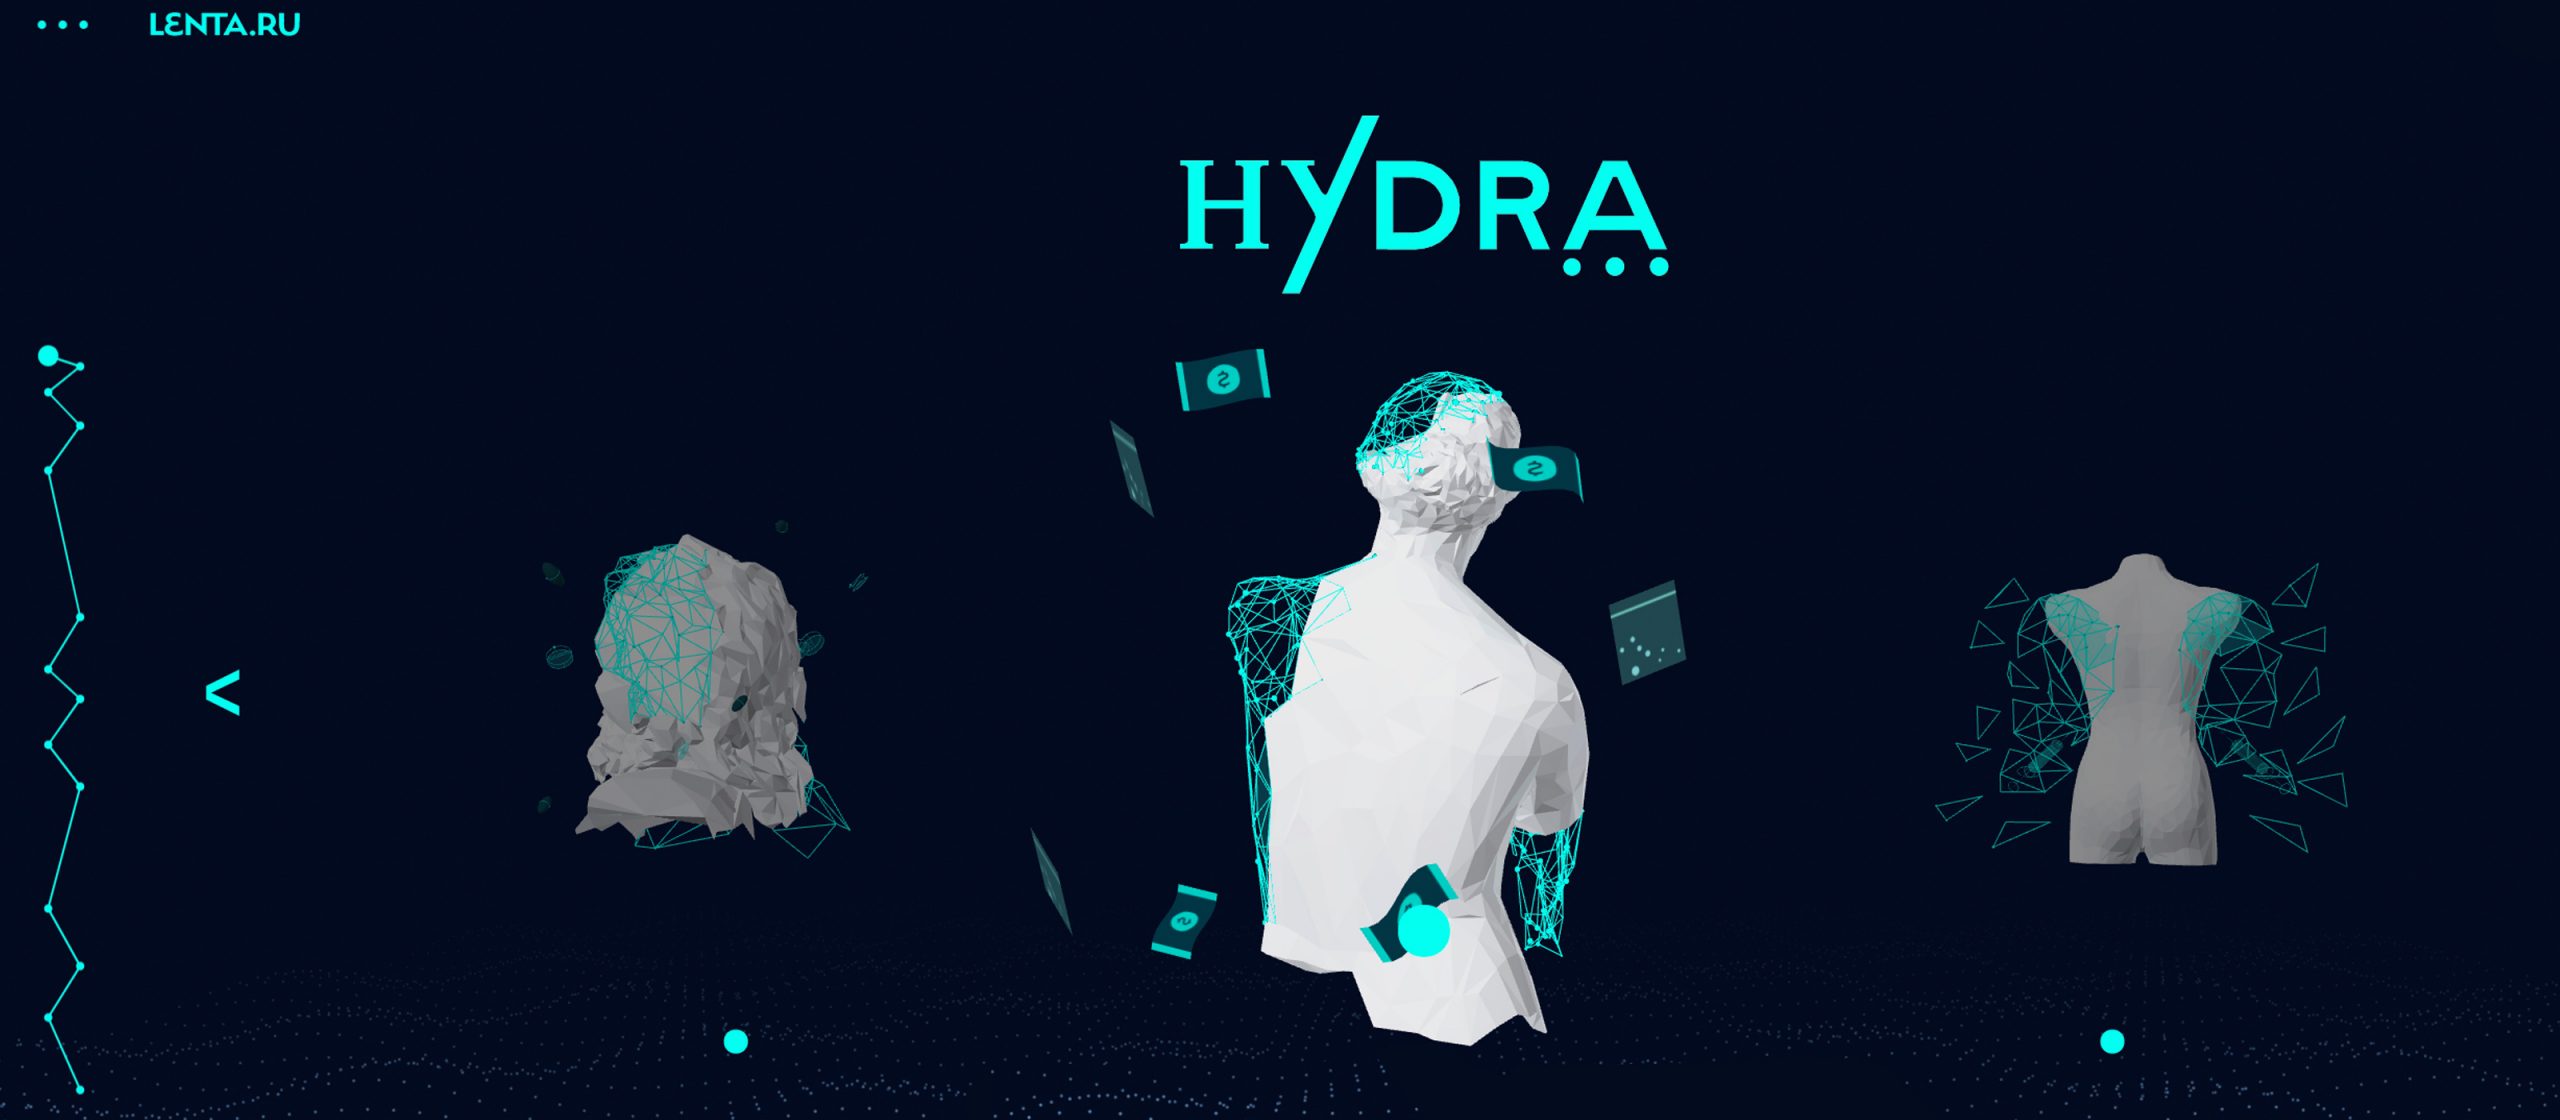 俄罗斯的Hydra 暗网市场计划出售1.46亿美元的代币